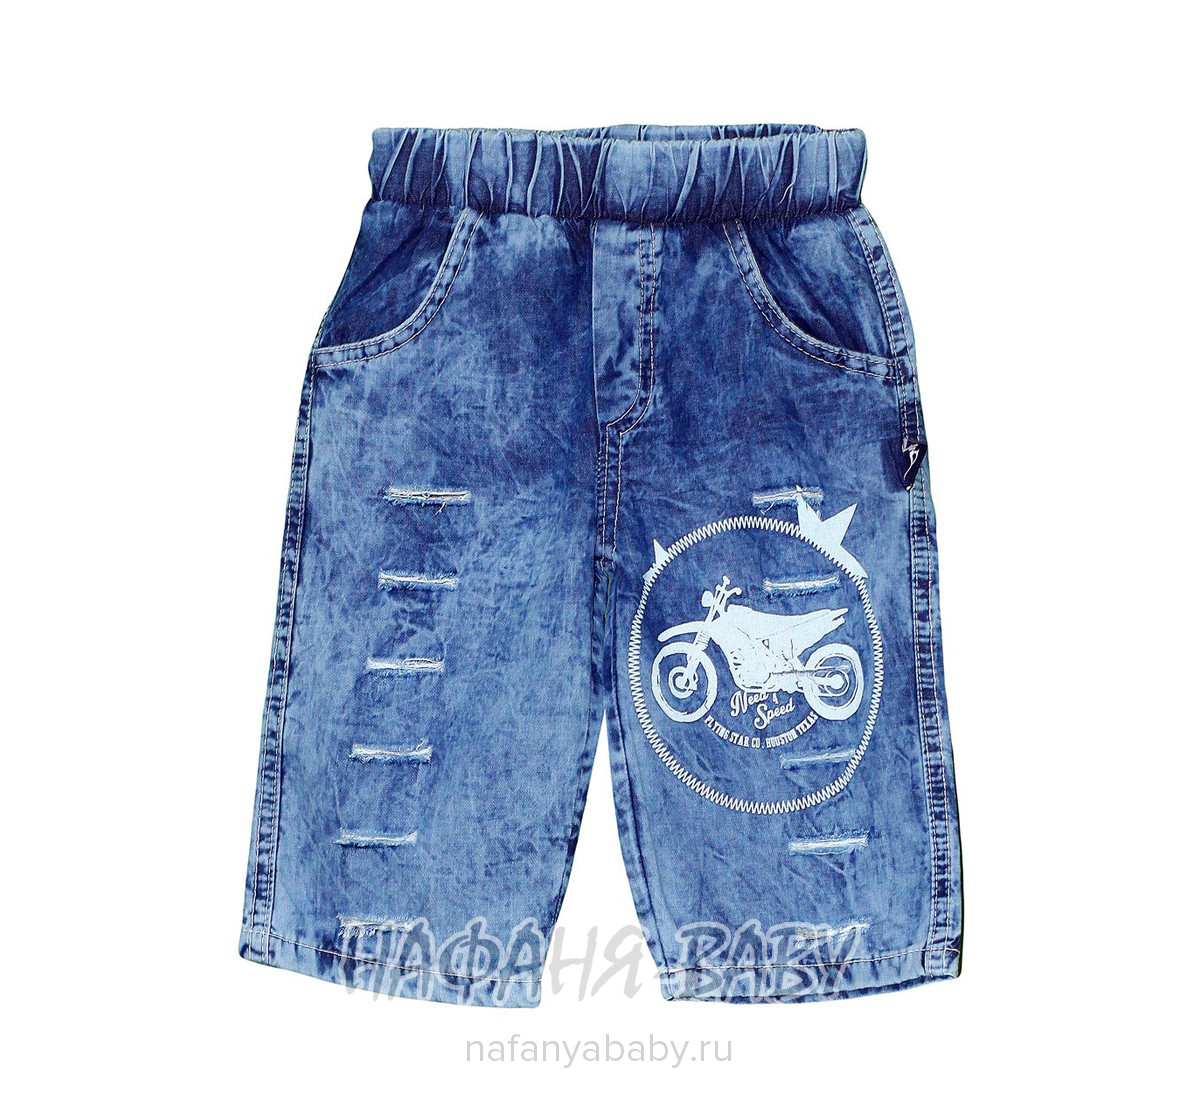 Детские джинсовые шорты AKIRA арт: 2688, 1-4 года, 5-9 лет, оптом Турция